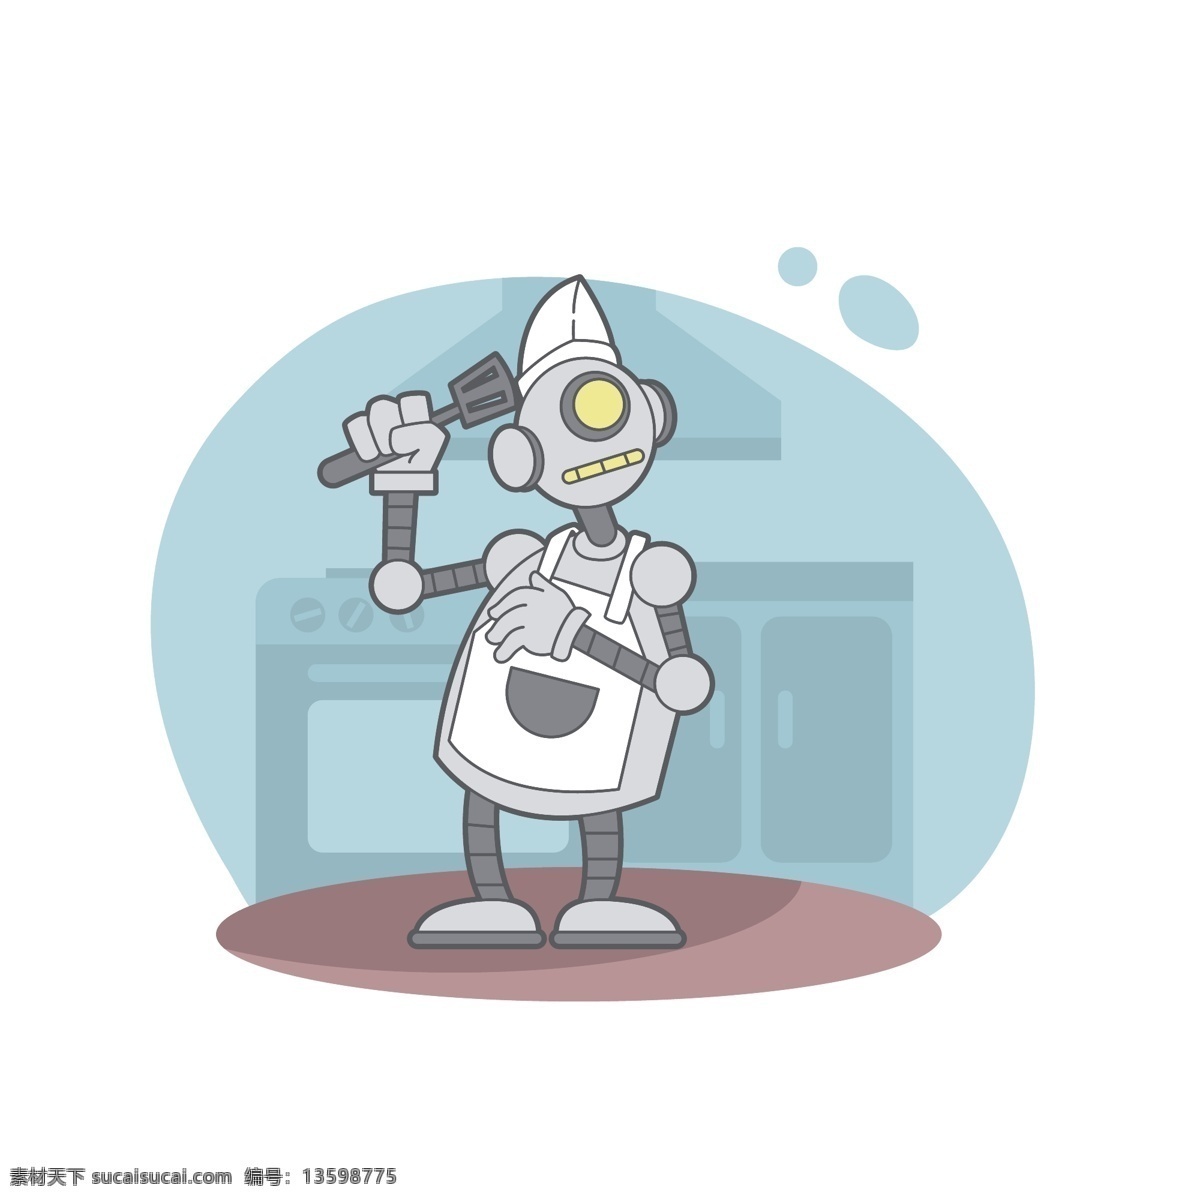 搞 怪 机器人 矢量 可爱 可爱机器人 搞怪 搞怪机器人 可爱的机器人 搞怪的机器人 手绘机器人